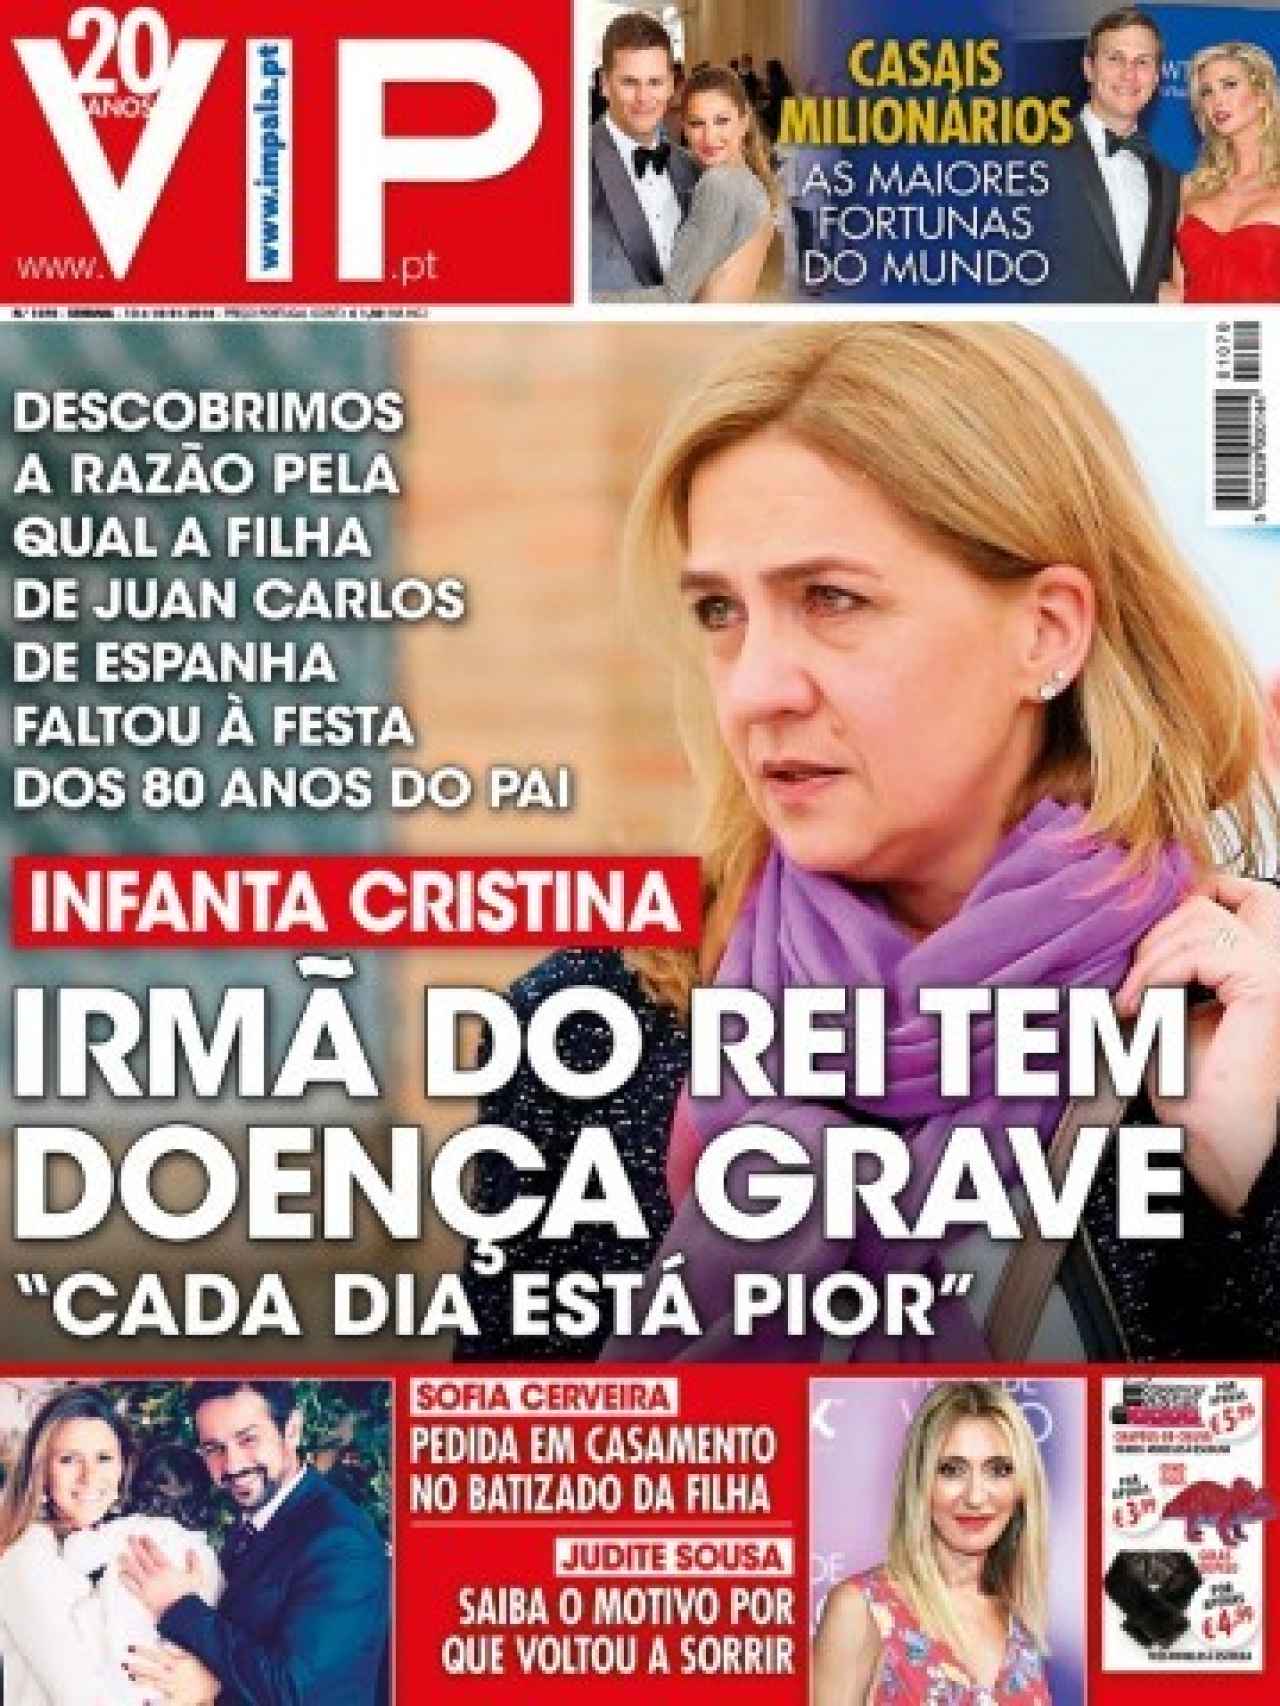 Portada de la revista portuguesa VIP.